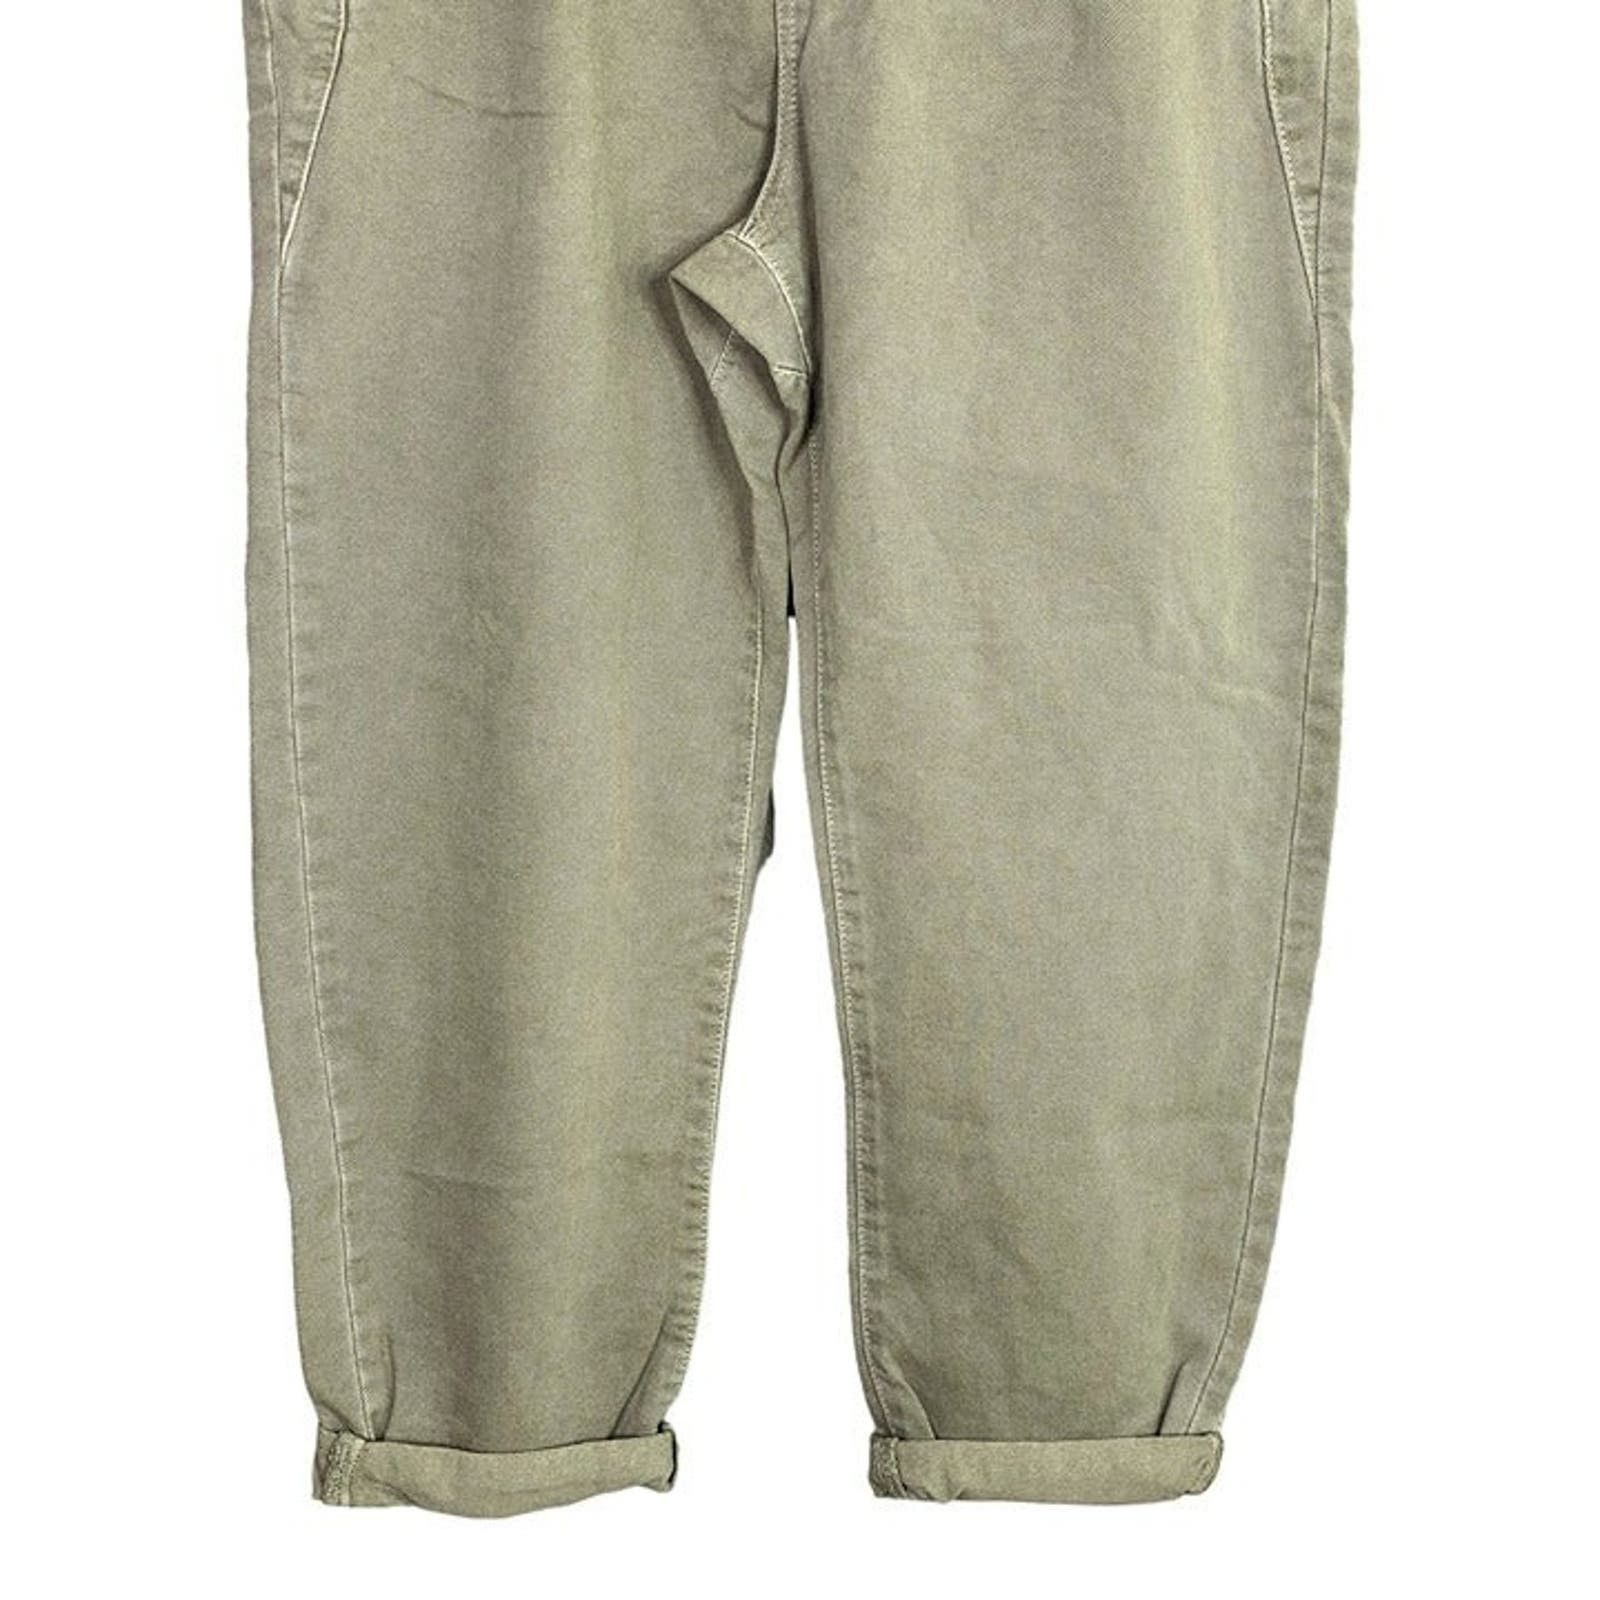 Zara Zara Paper Bag Relaxed Baggy Jeans Pants 29 Khaki Green Size 29" - 9 Thumbnail